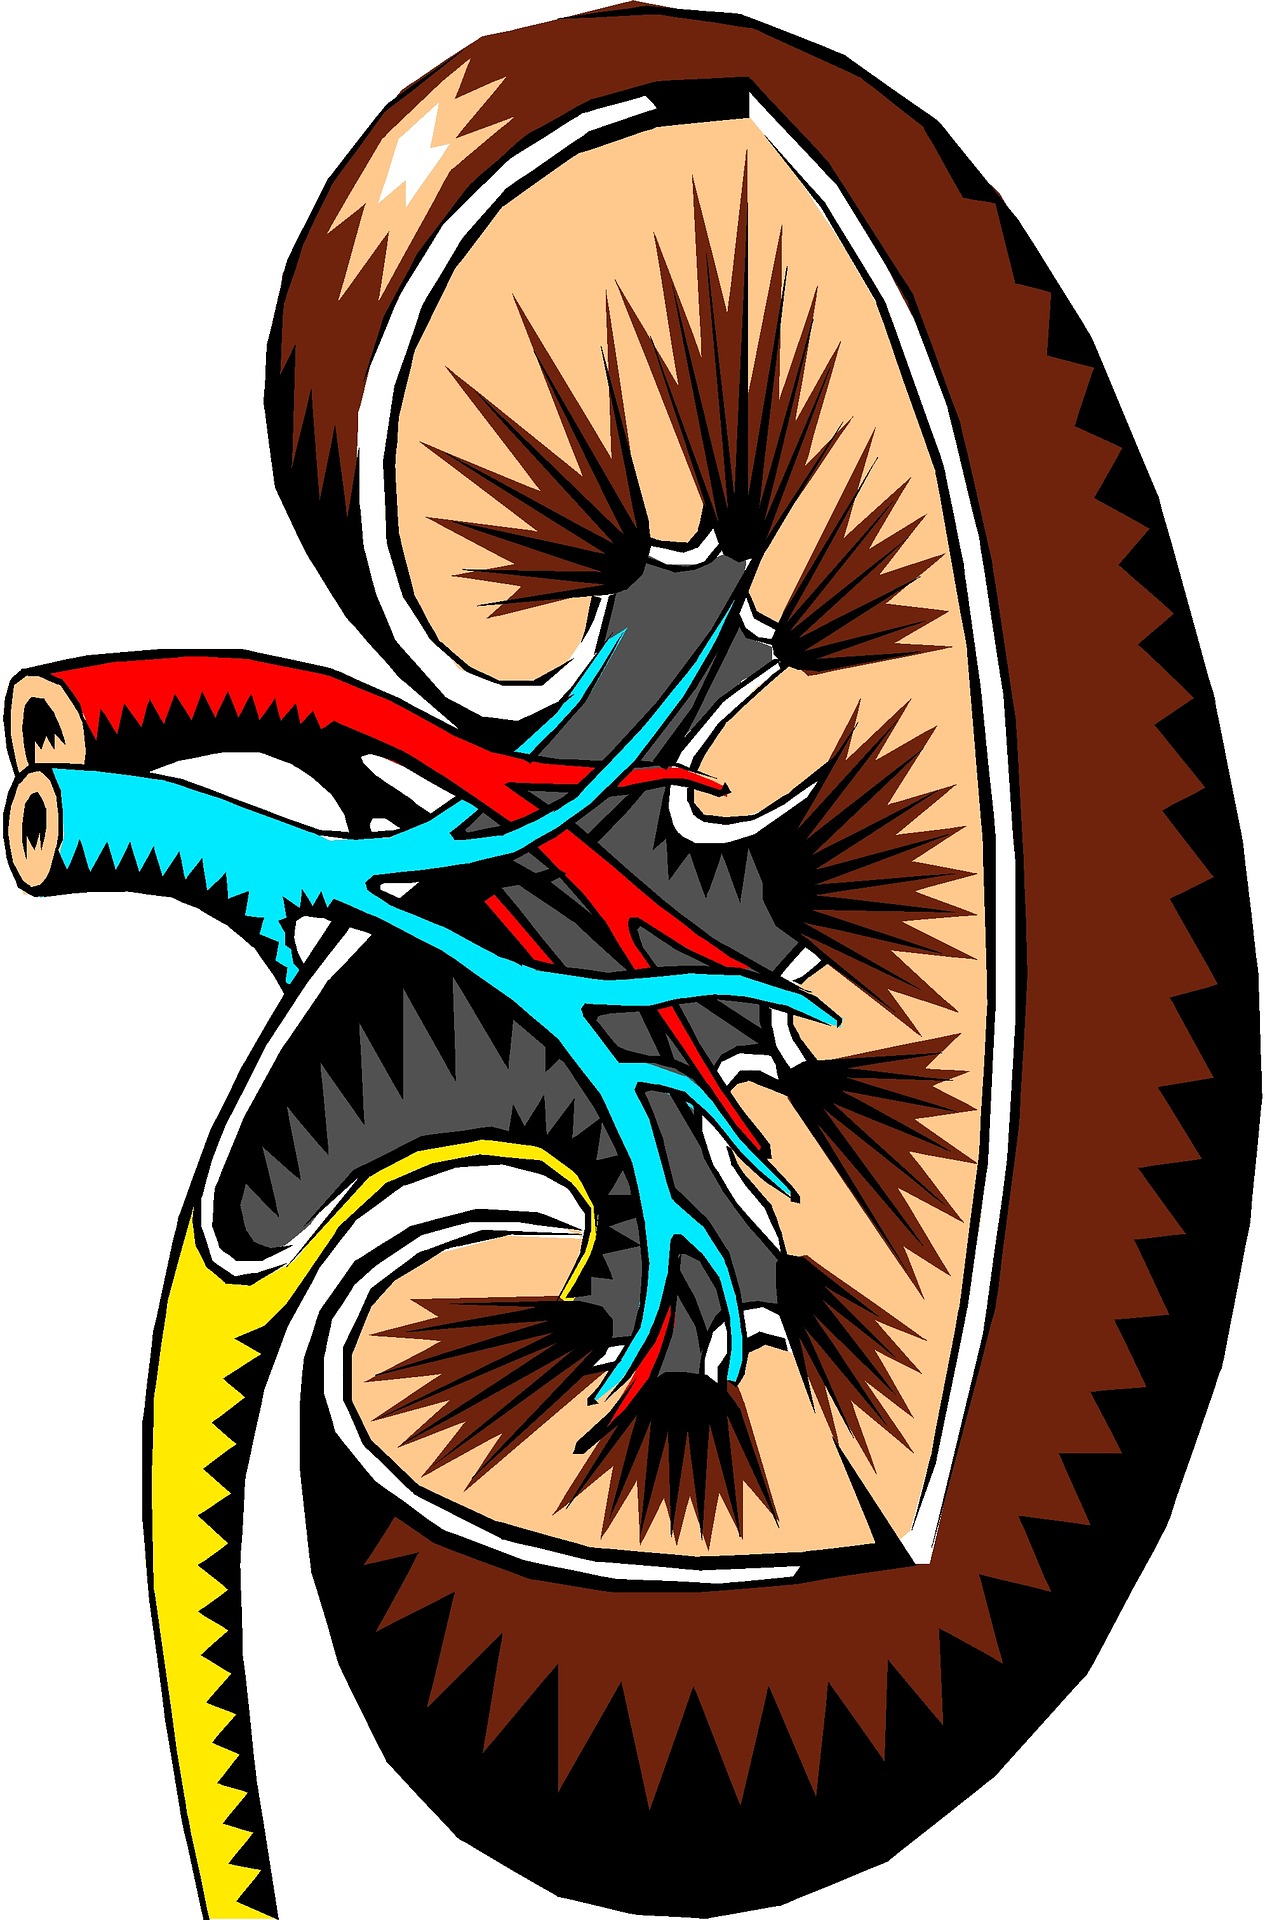 kidney-2183443_1920.jpg